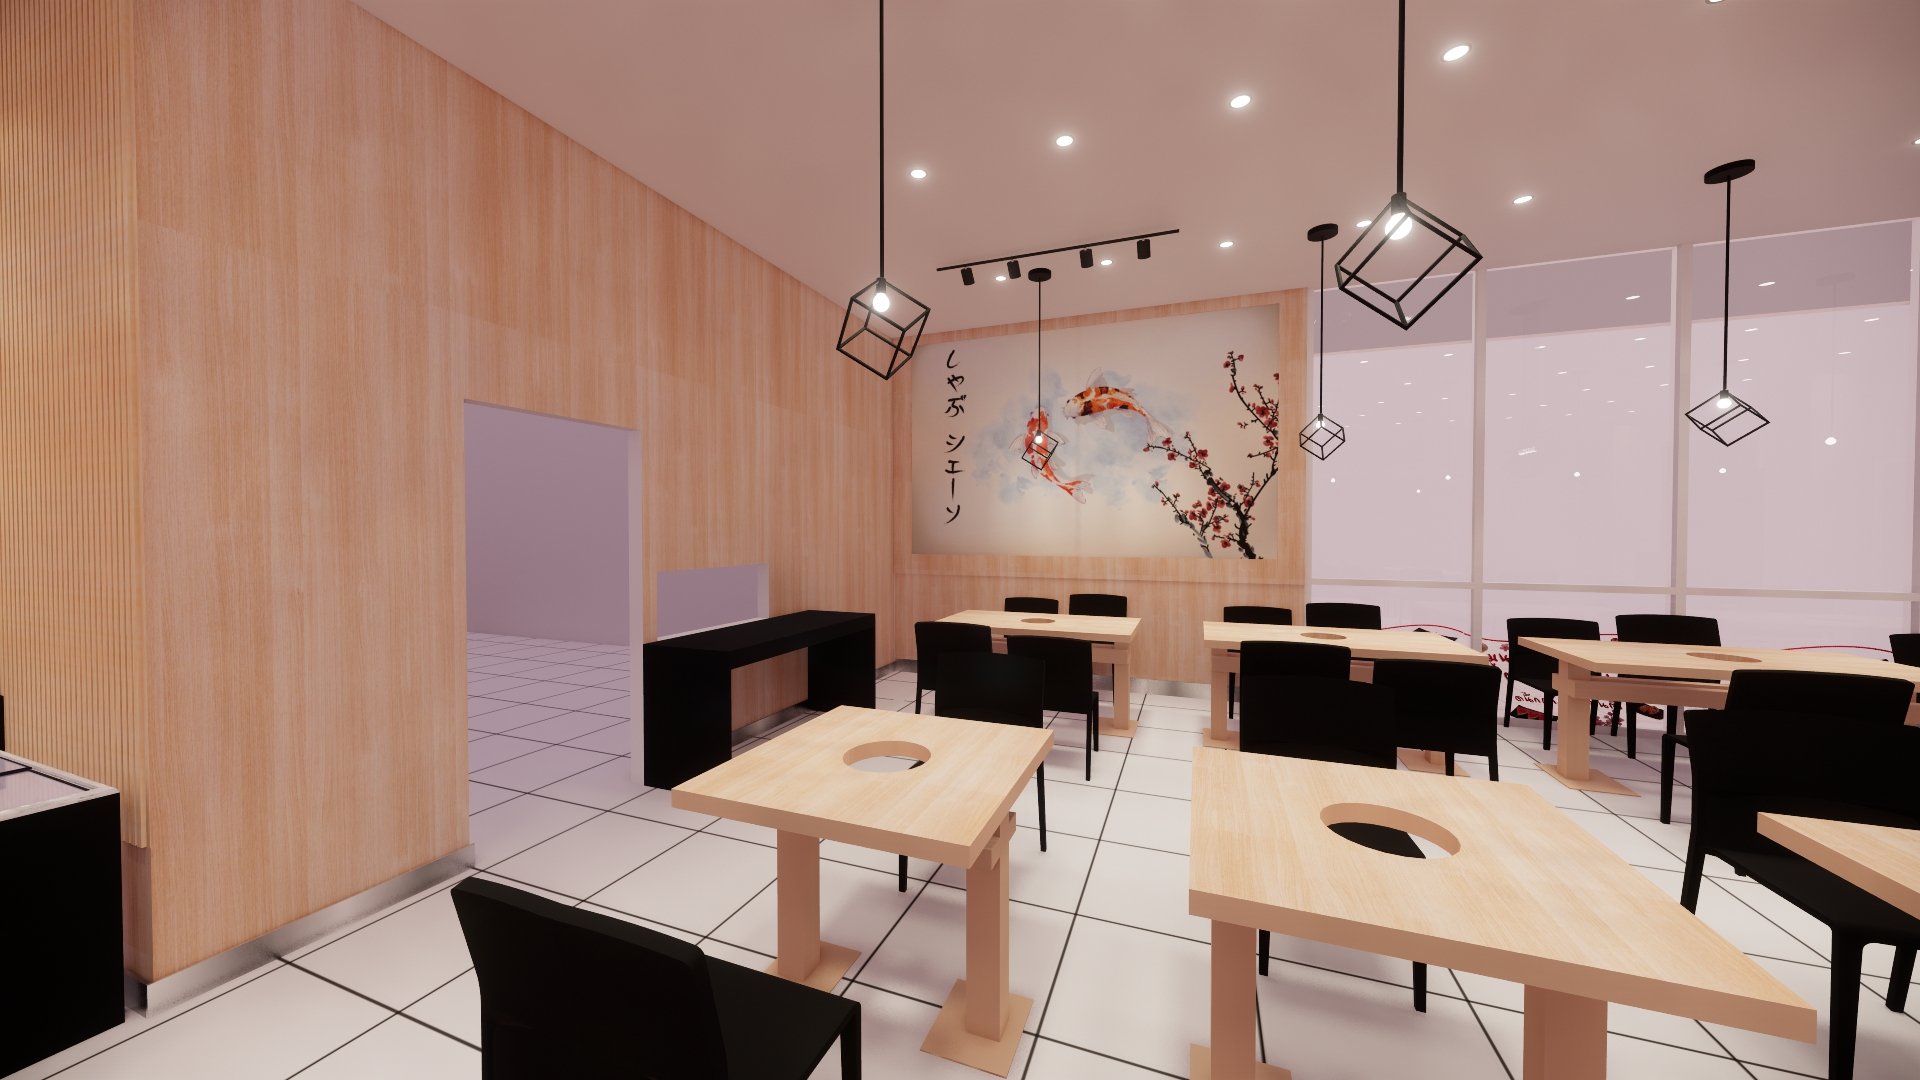 บริการออกแบบระบบ 3D : ร้านชาบูเชน บิ๊กซีสำโรง 2